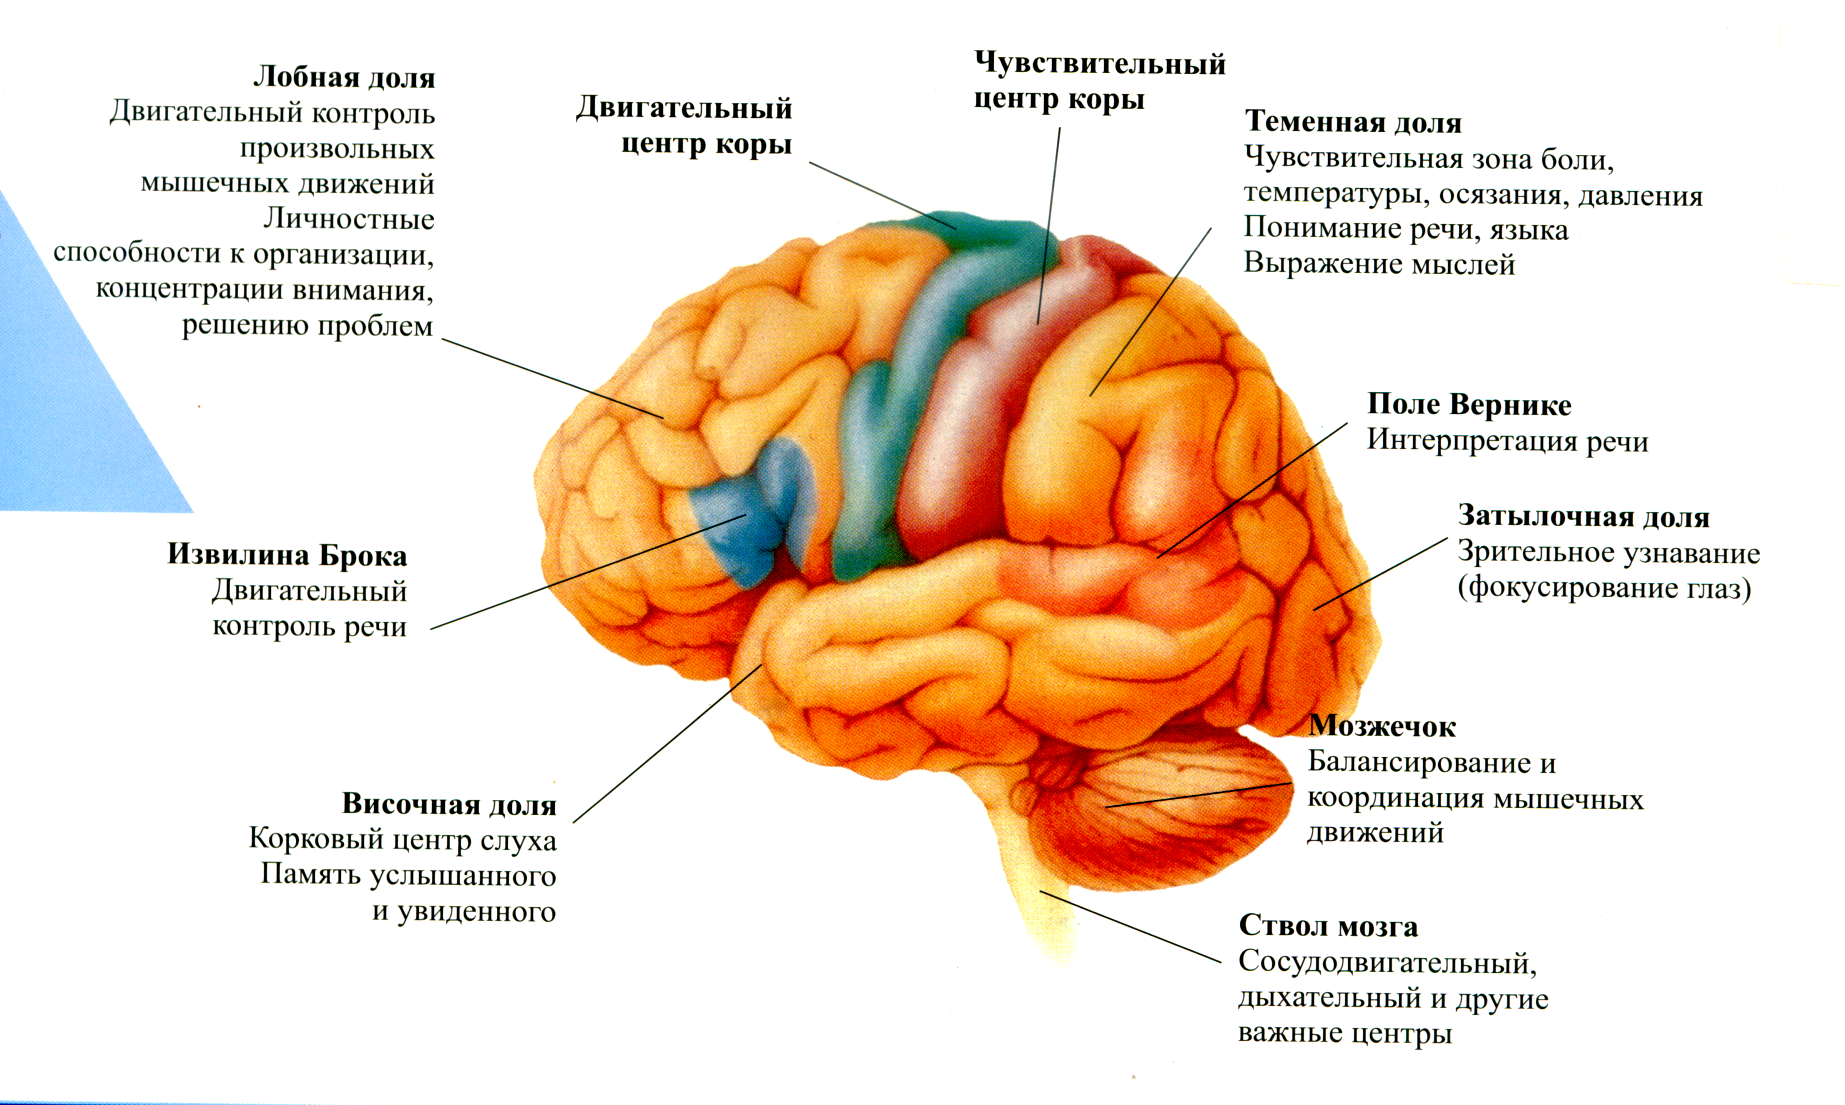 Нижних конечностей и головного мозга. Функции отделов коры головного мозга. Строение доли зоны коры головного мозга. Доли коры головного мозга и их функции.